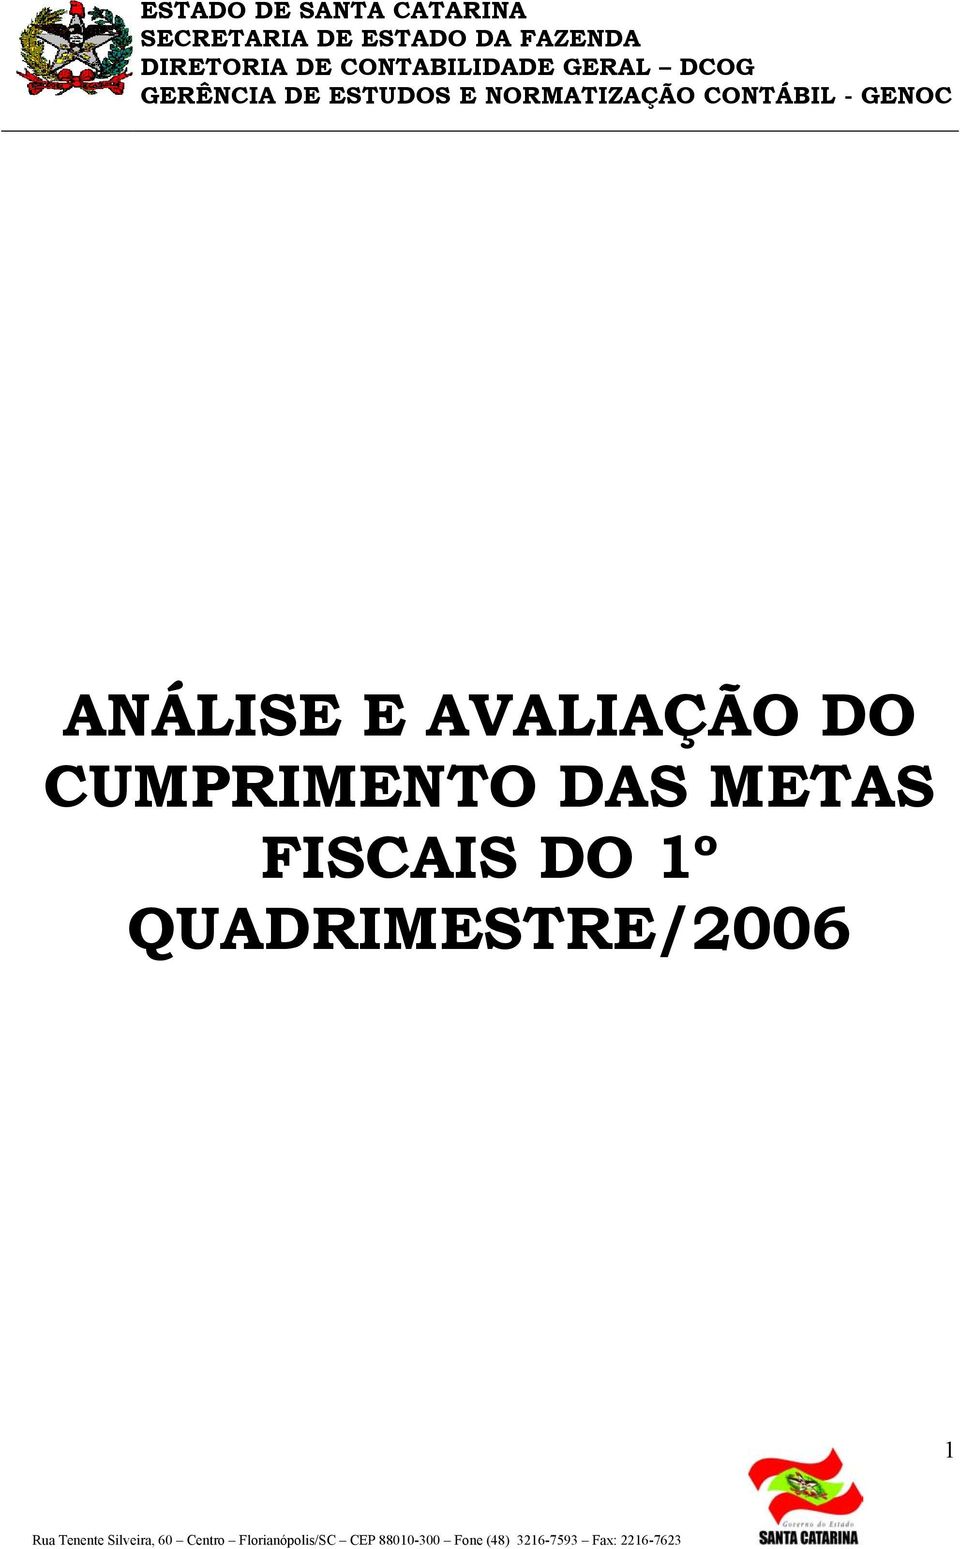 ANÁLISE E AVALIAÇÃO DO CUMPRIMENTO DAS METAS FISCAIS DO 1º QUADRIMESTRE/2006 1